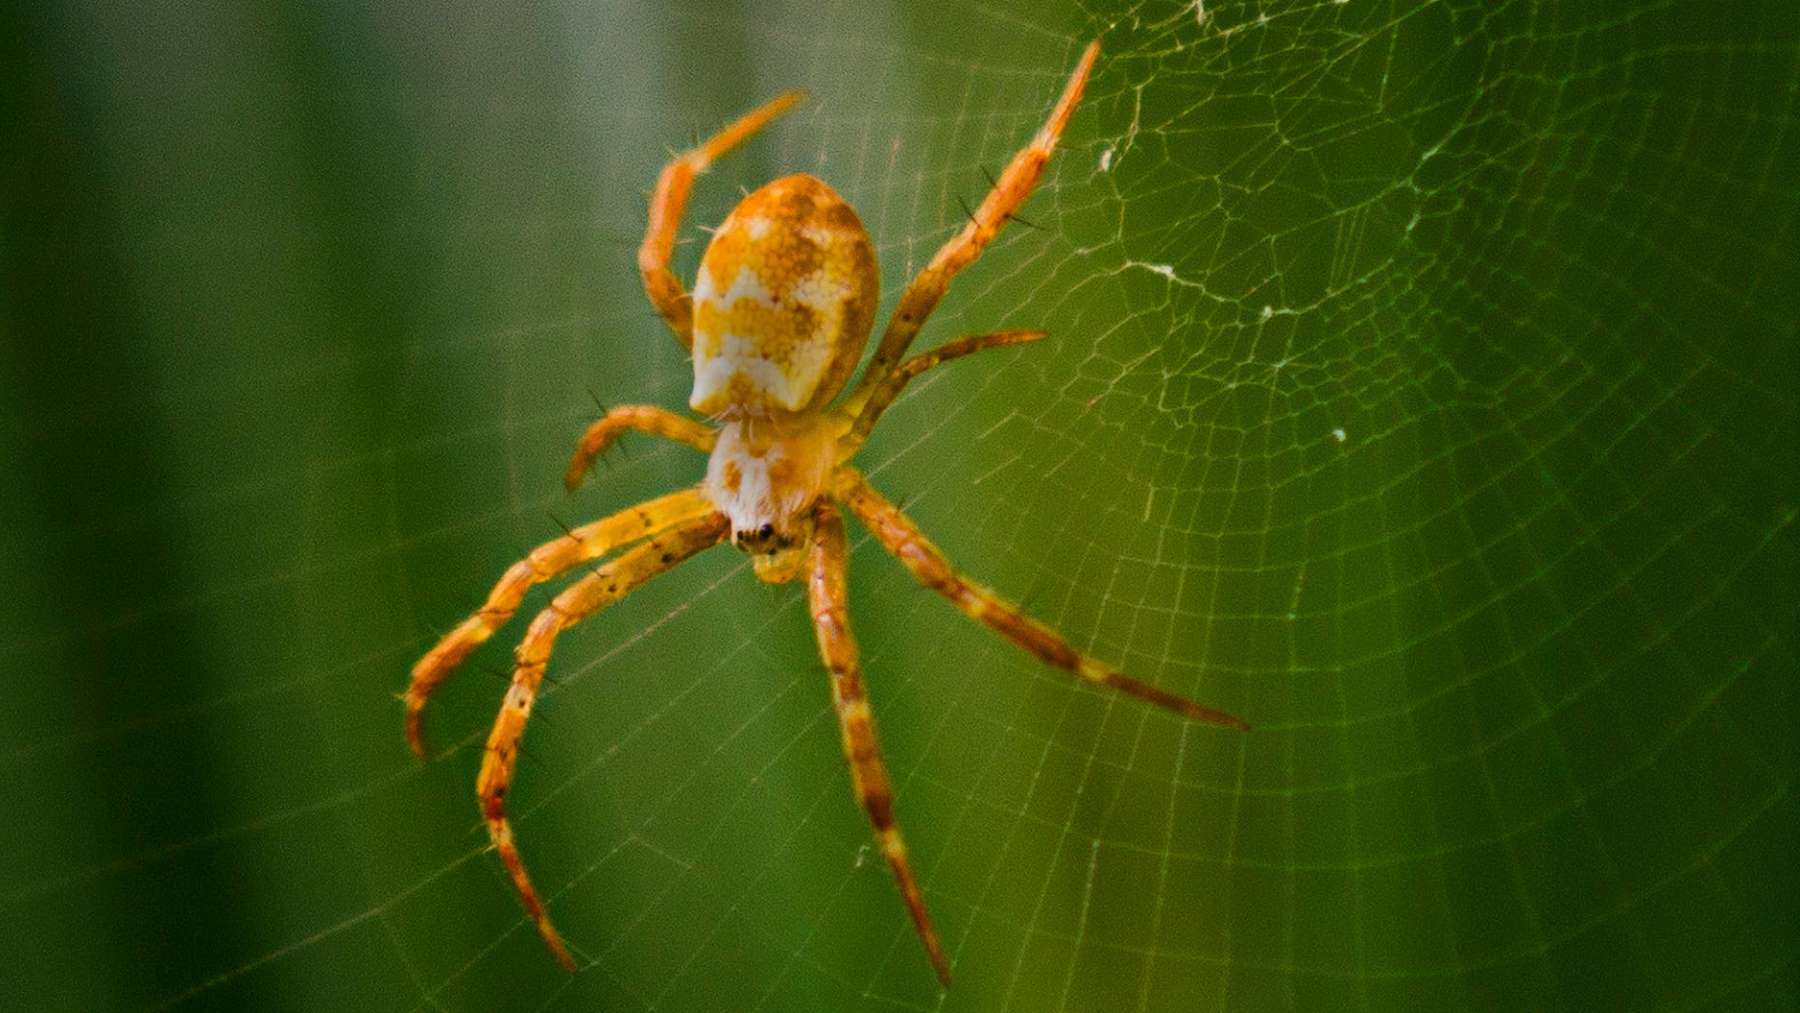 Soñar con arañas: ¿qué significa?